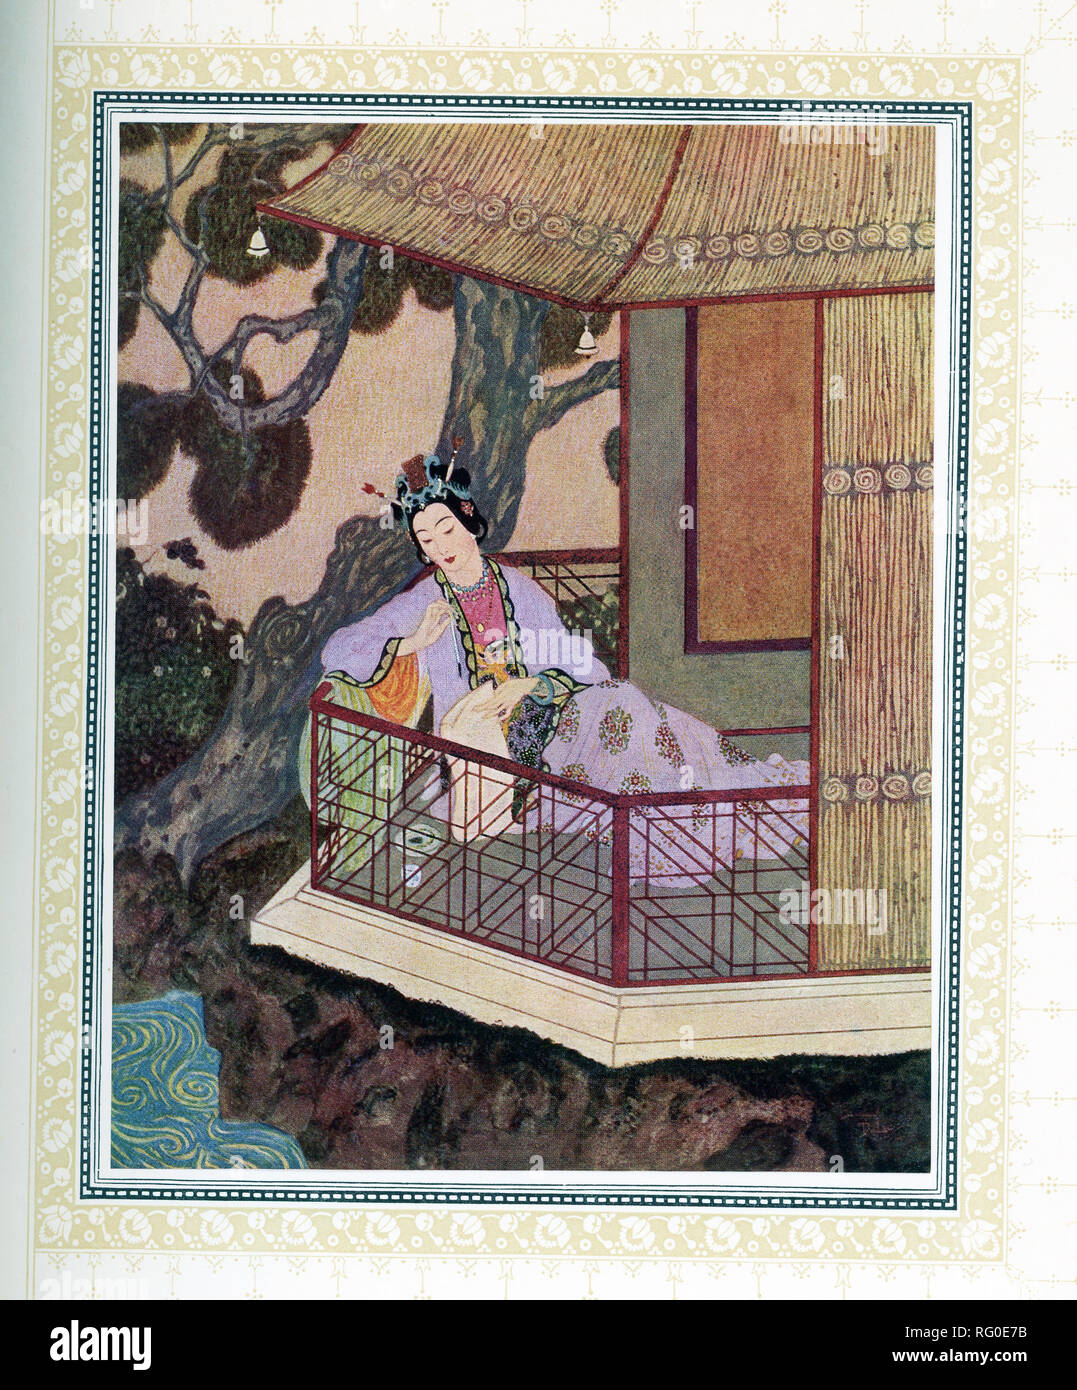 Diese Abbildung ist von dem Buch inbad Sailor ', die um 1914 veröffentlicht wurde. Es zeigt Lady SZ-el-Budr. Der Illustrator war Edmund Dulac und die Geschichte aus 1001 Nacht. Aladdin verliebte sich in Lady SZ-el-Buhr, wenn er sie sah. Stockfoto